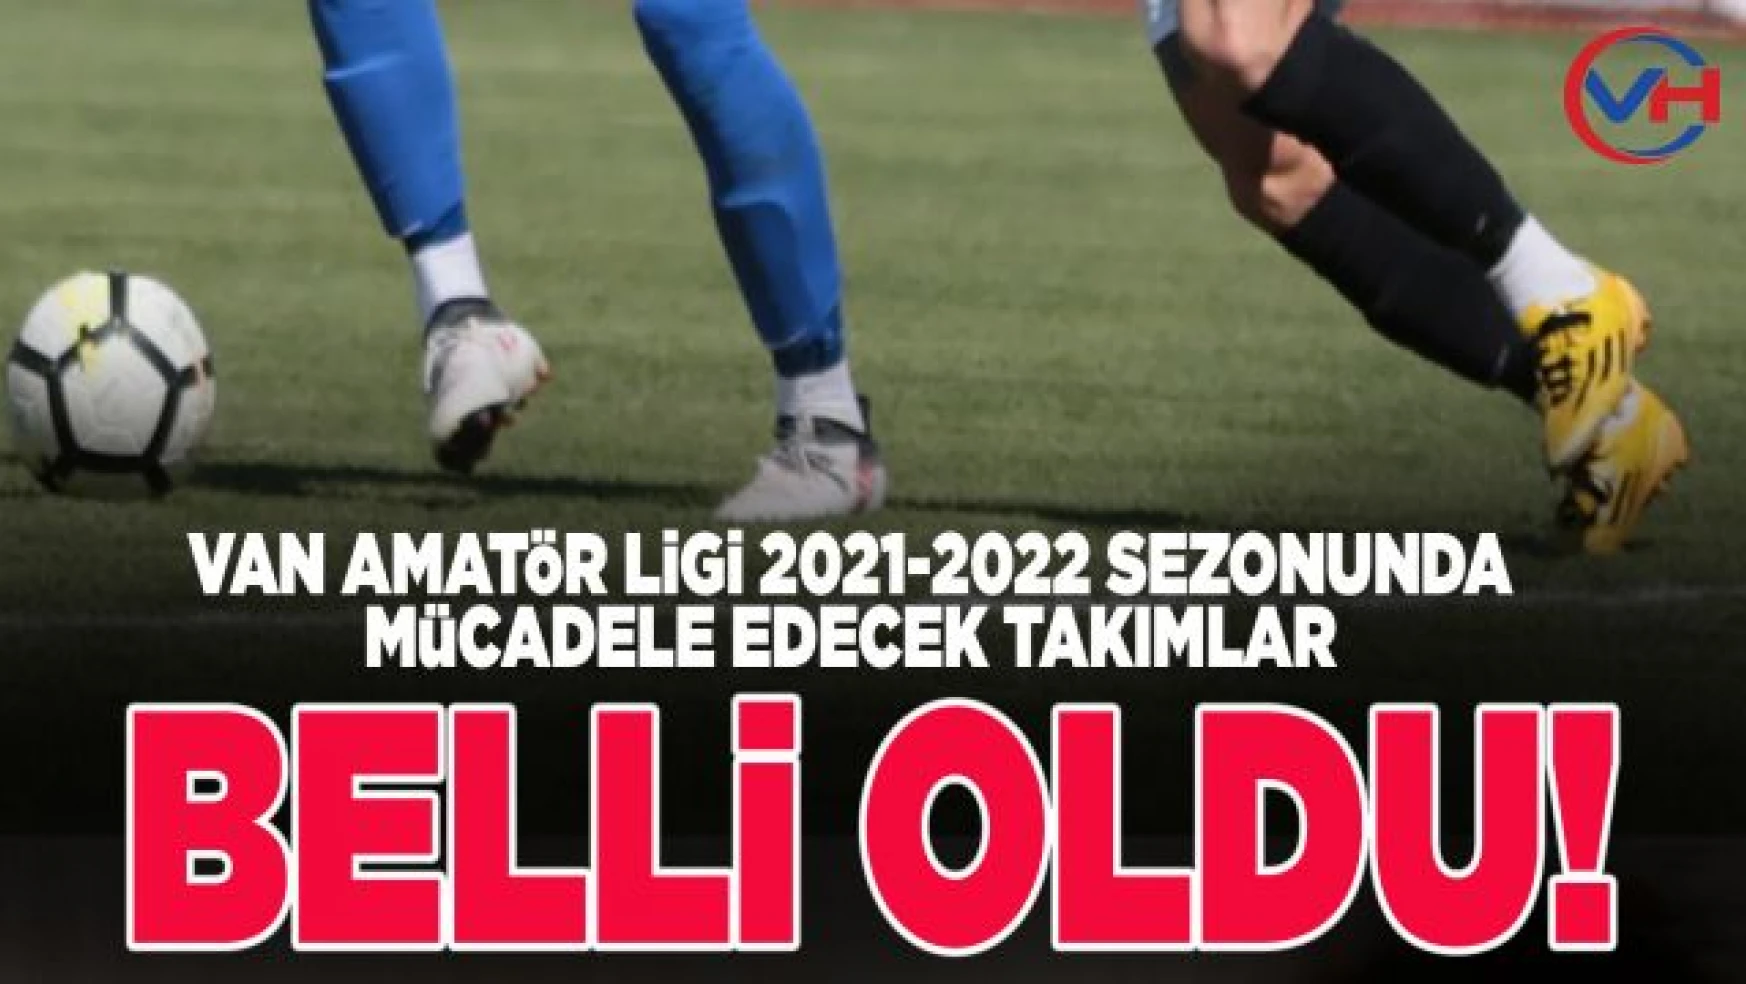 Van Amatör Ligi 2021-2022 futbol sezonunda mücadele edecek takımlar belli oldu